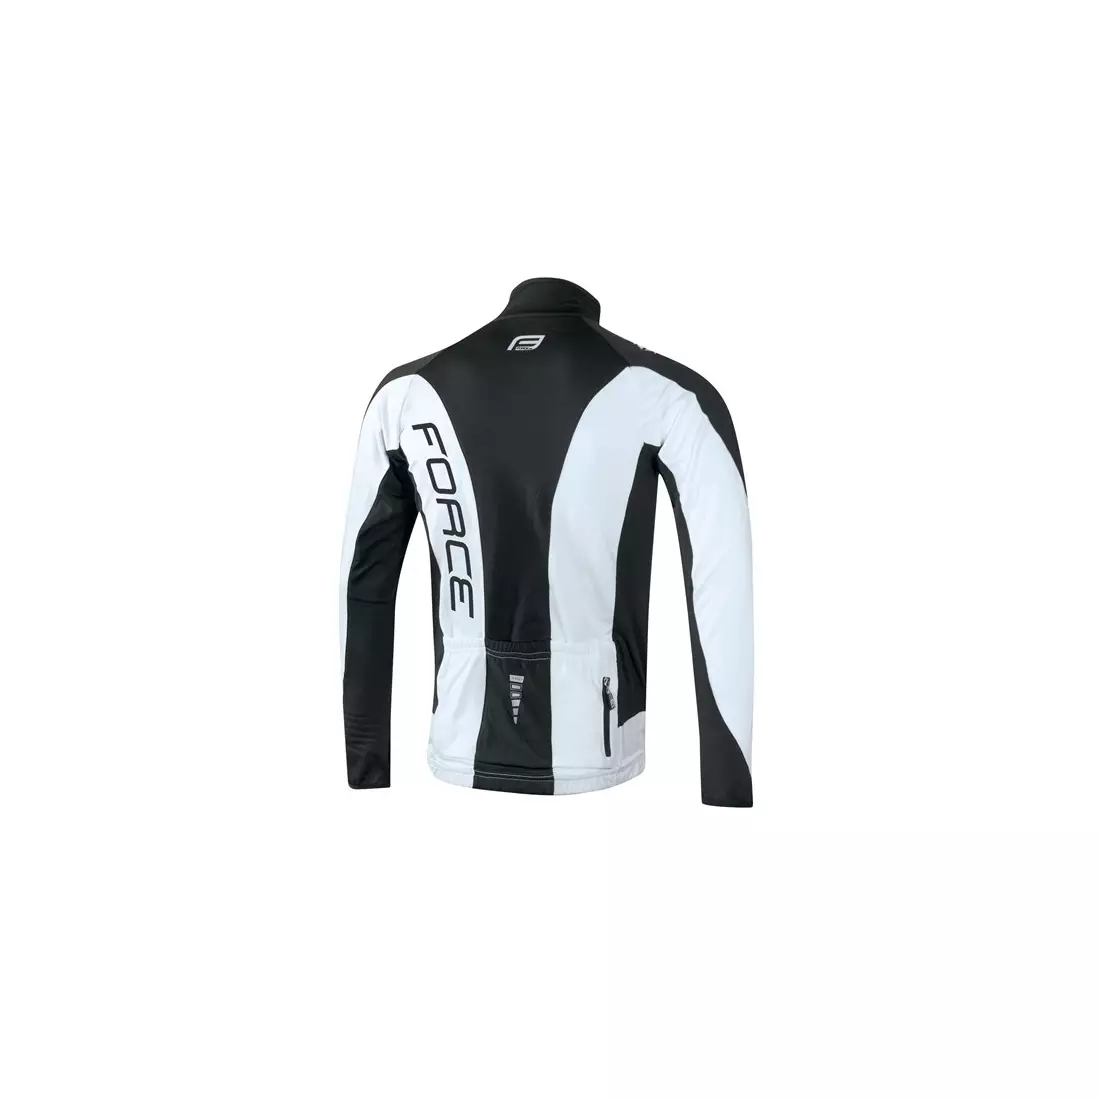 FORCE X68 pánsky zateplený cyklistický dres, čierno-biely 89984